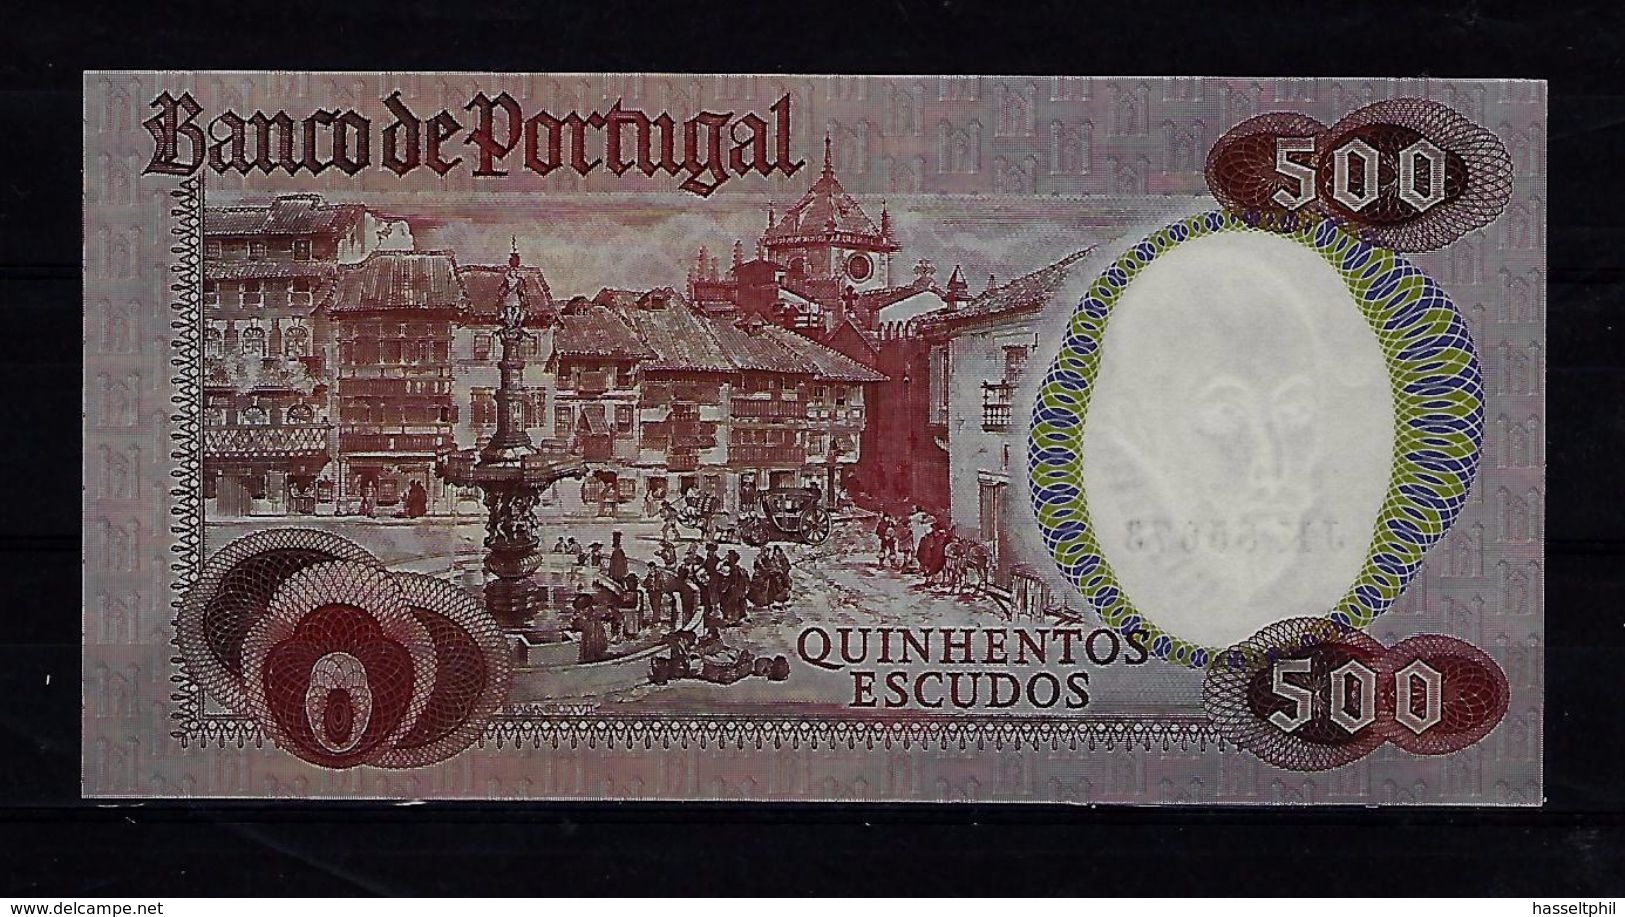 PORTUGAL 500 Escudos - 4.10.1979 - Francisco Sanches  - UNC - Portugal